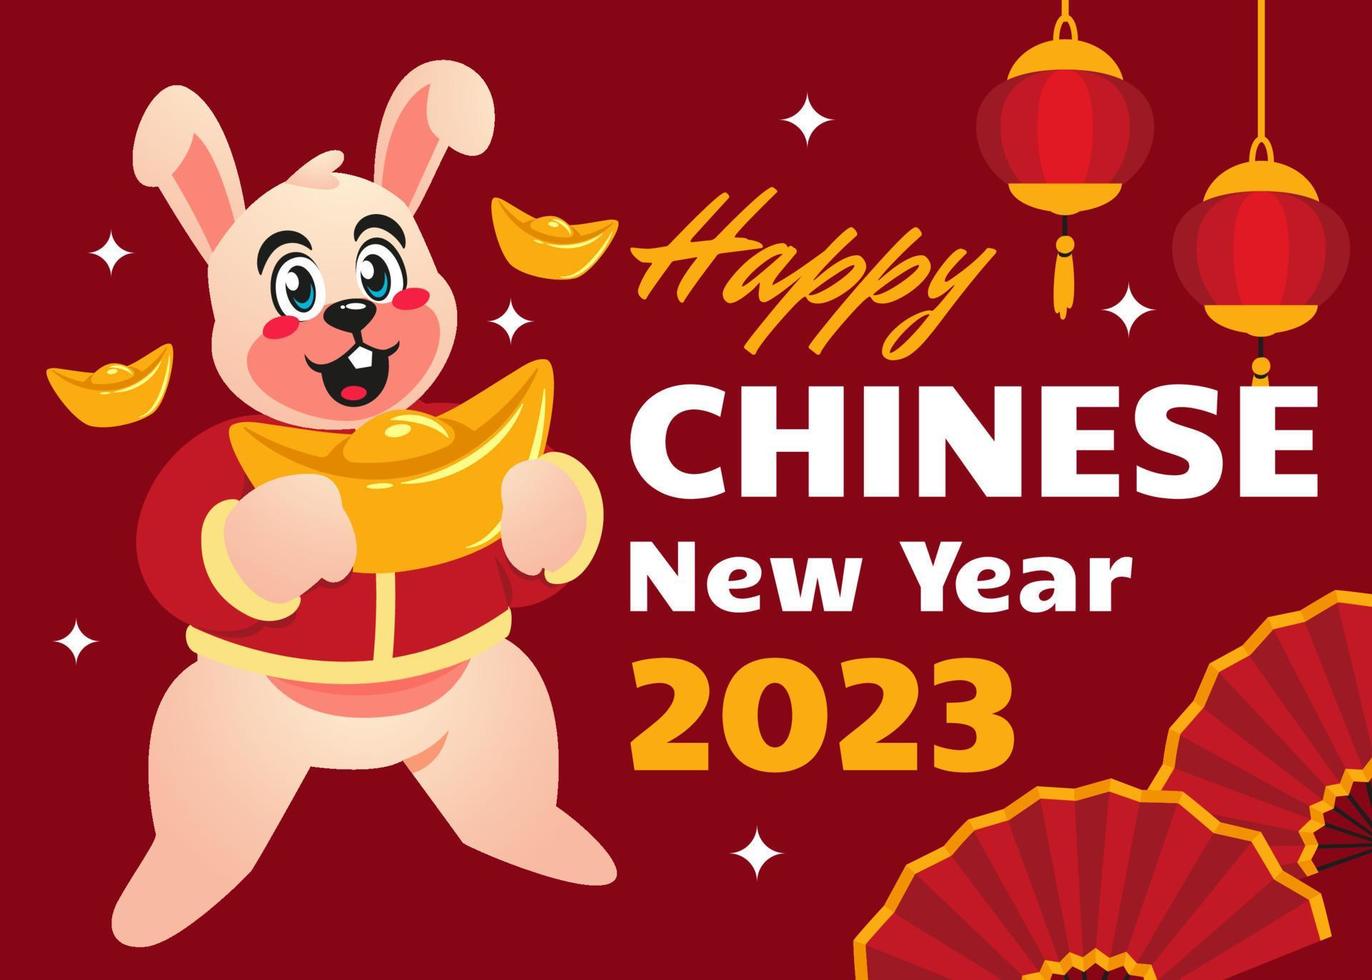 bannière de célébration du festival du nouvel an chinois vecteur